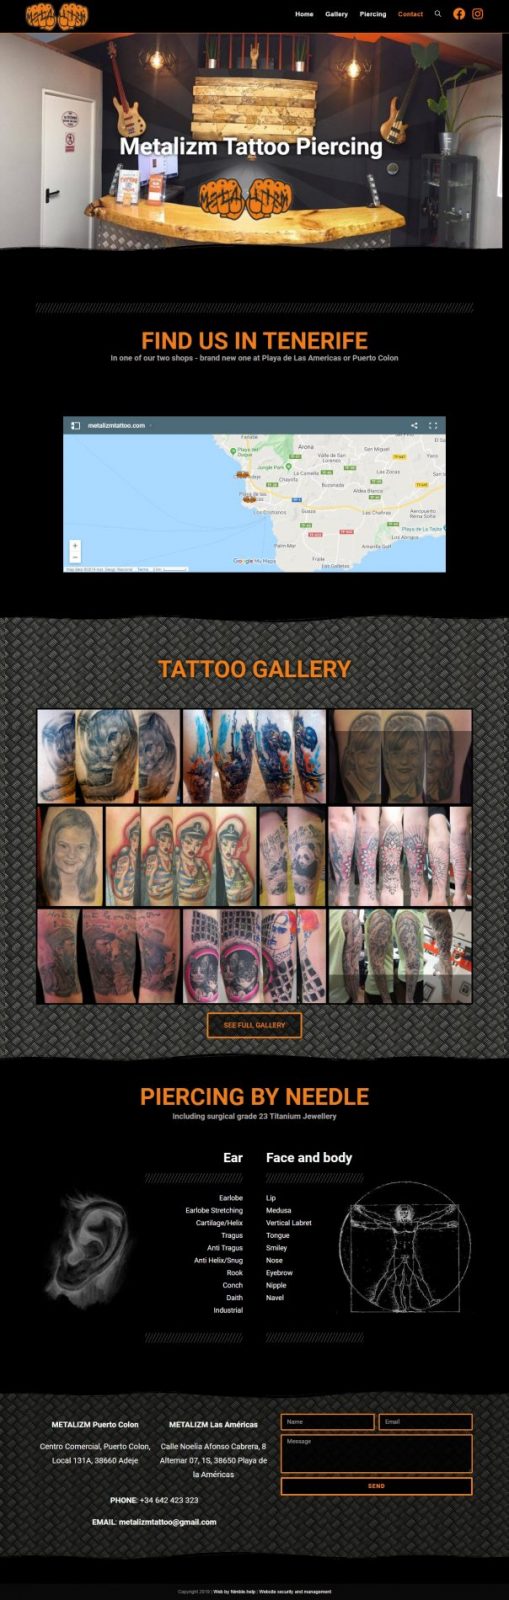 Tattoo štúdio Metalizmtattoo.com - portfólio umelca webstránka 1